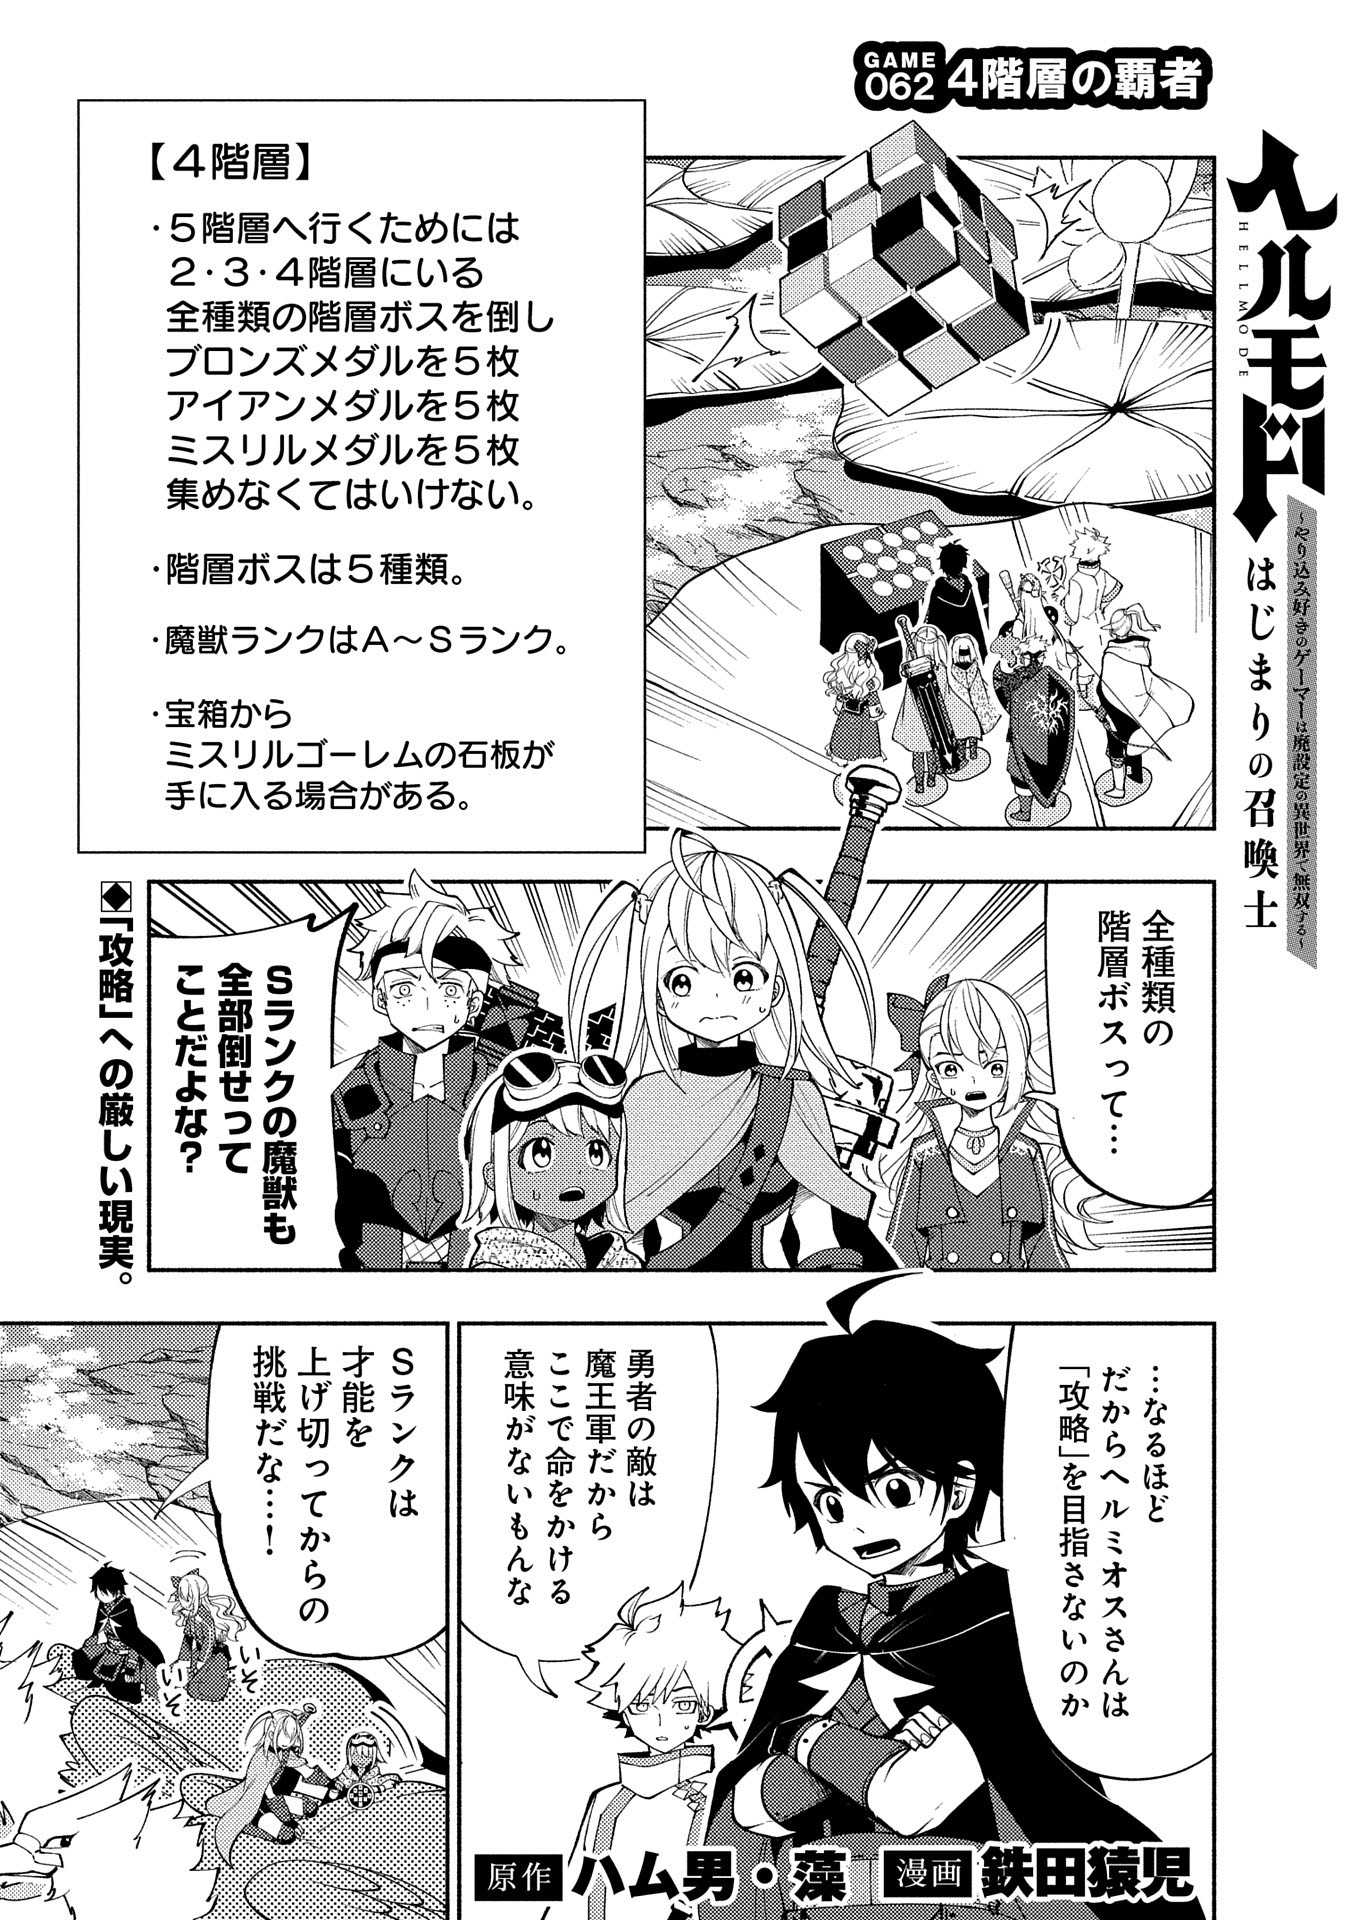 Hell Mode: Yarikomi Suki no Gamer wa Hai Settei no Isekai de Musou Suru - Chapter 62 - Page 1